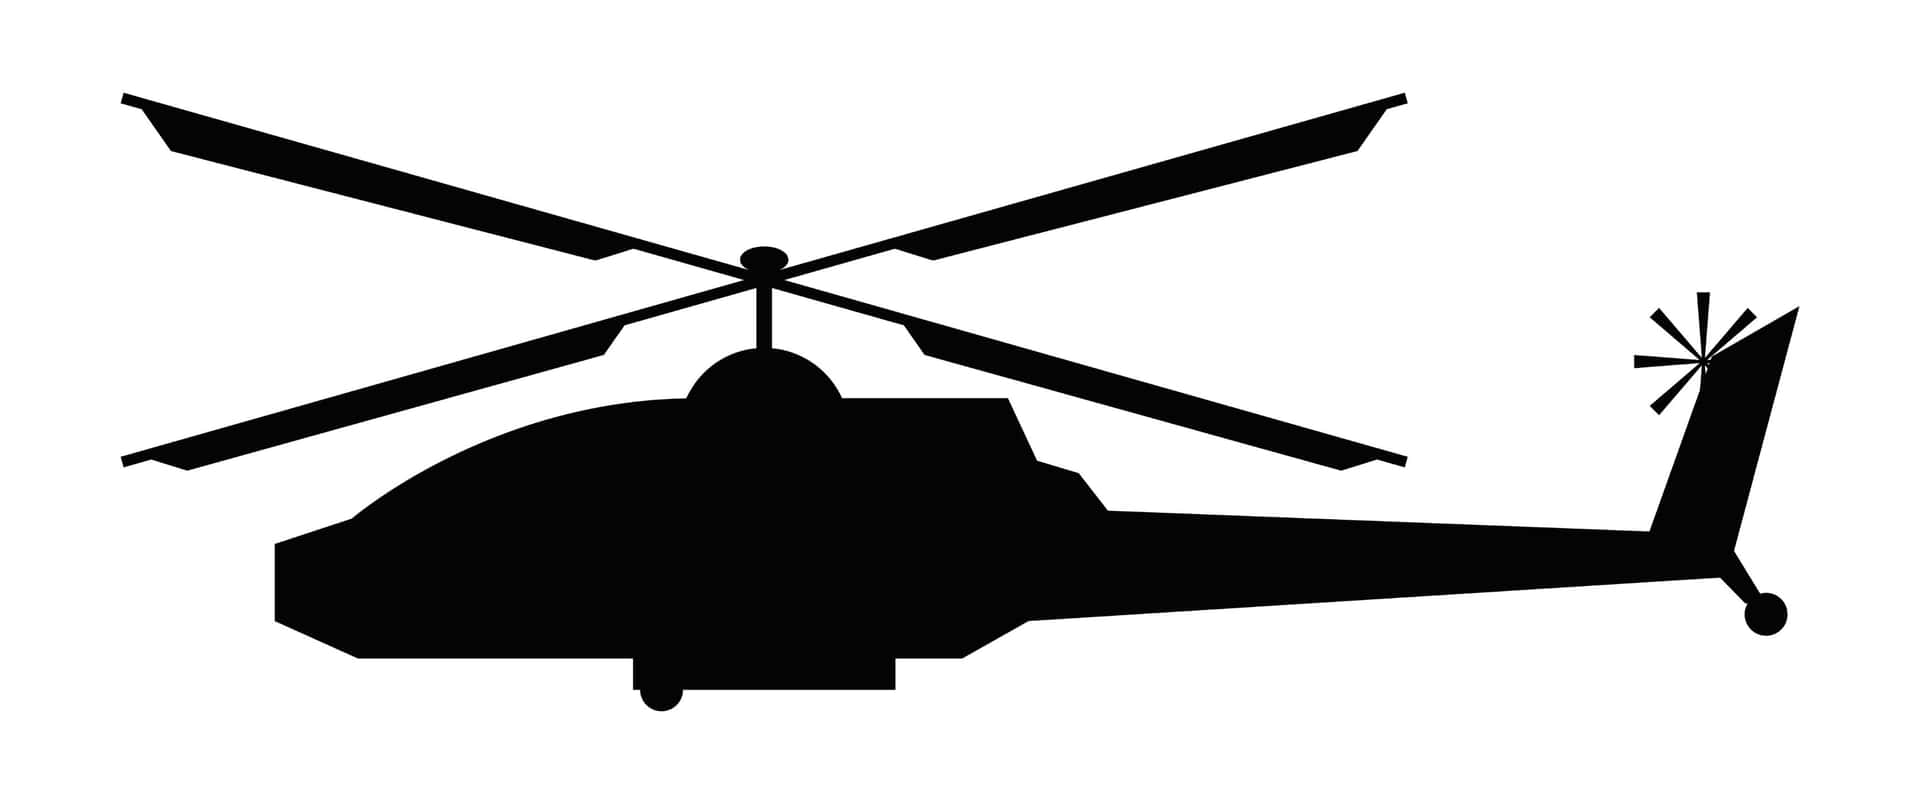 Upplevspänningen Av Att Flyga Med En Ikonisk Helikopter.